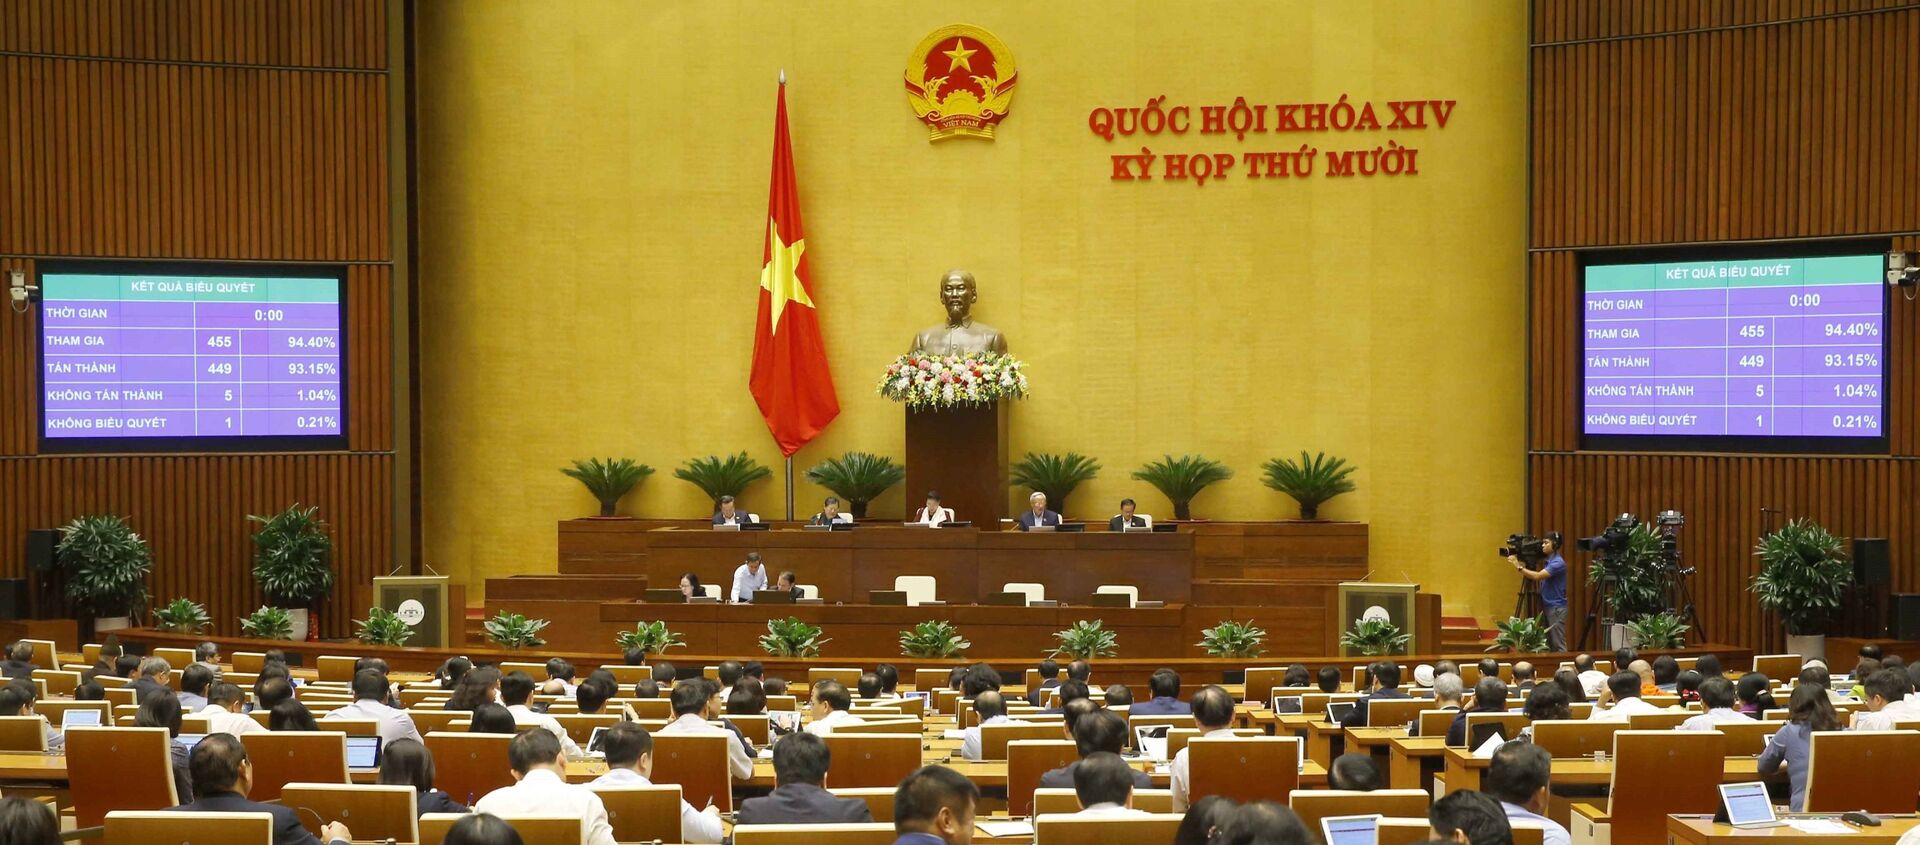 Quốc hội biểu quyết thông qua Luật Cư trú (sửa đổi). - Sputnik Việt Nam, 1920, 06.01.2021